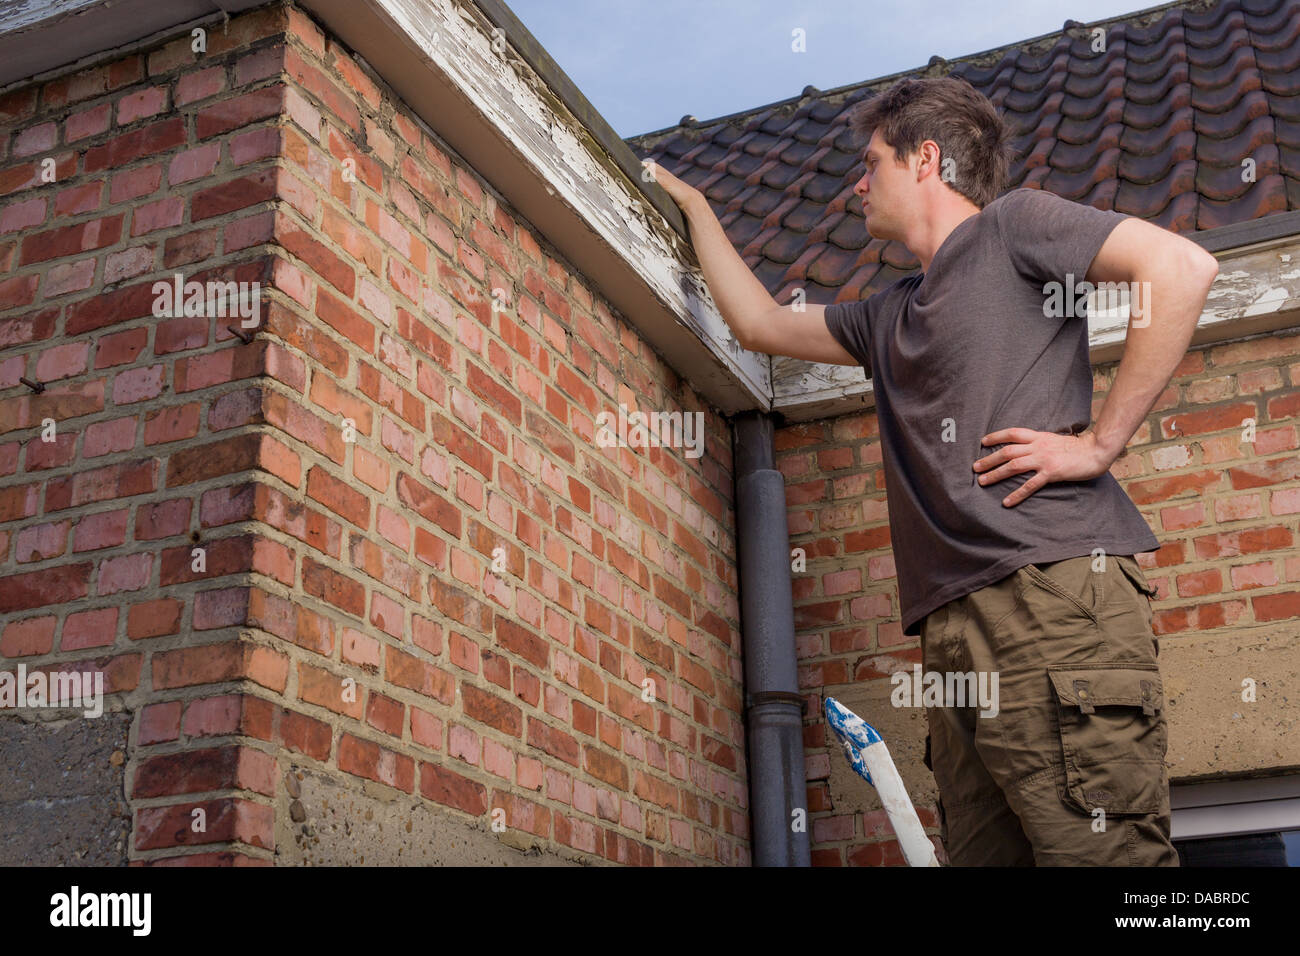 Junger Mann, das Dach eines alten Hauses stehen auf einer Leiter Inspektion Stockfoto